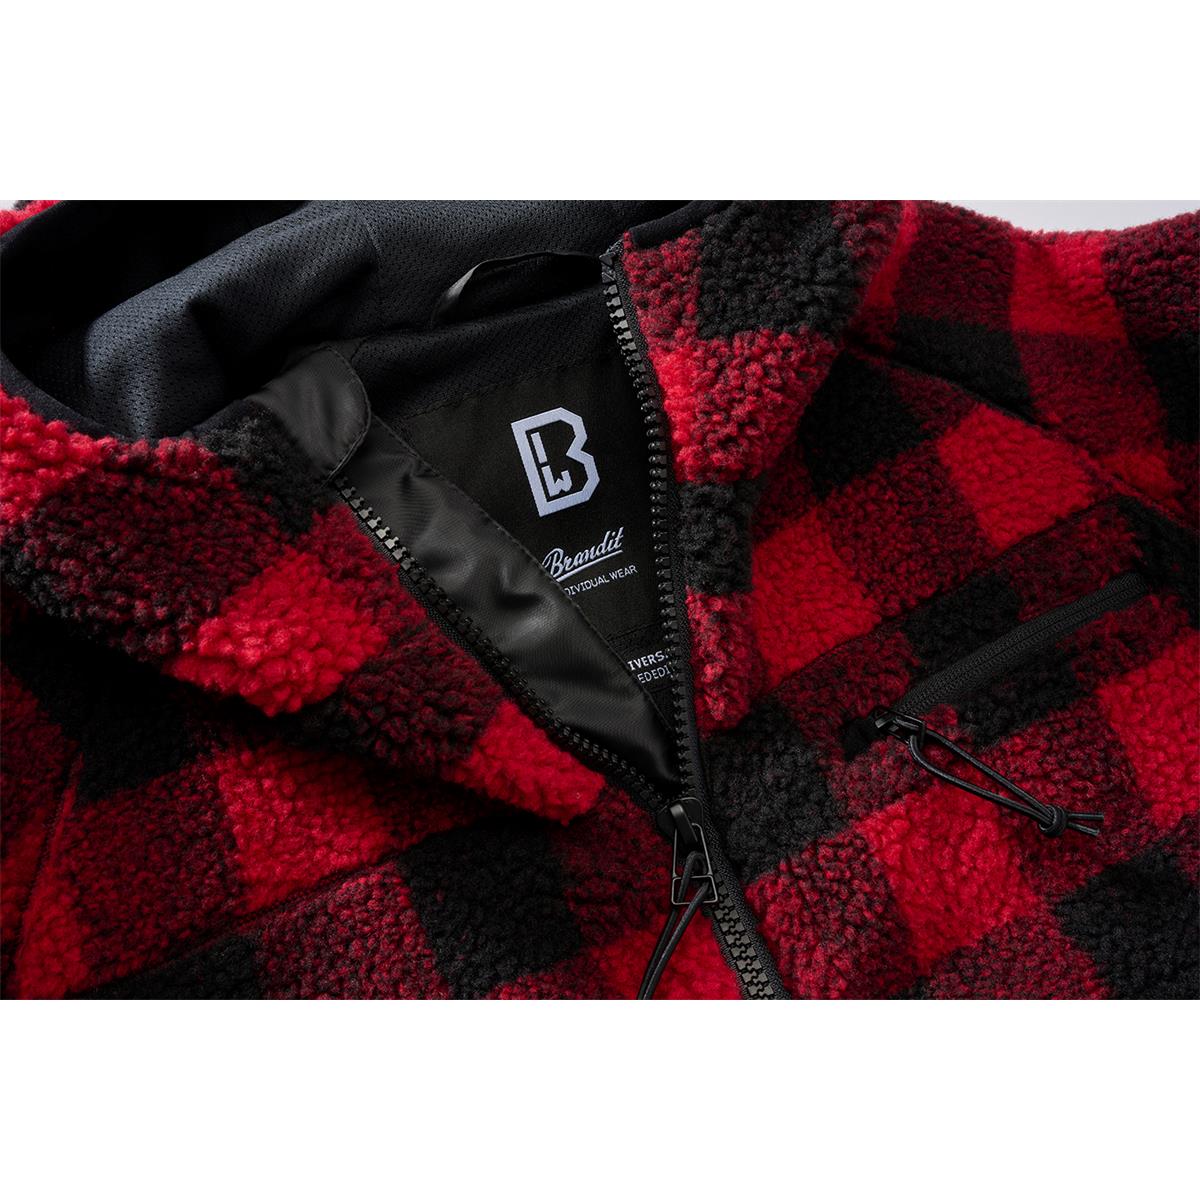 Brandit - Teddyfleece Worker Jacket red / black - S 